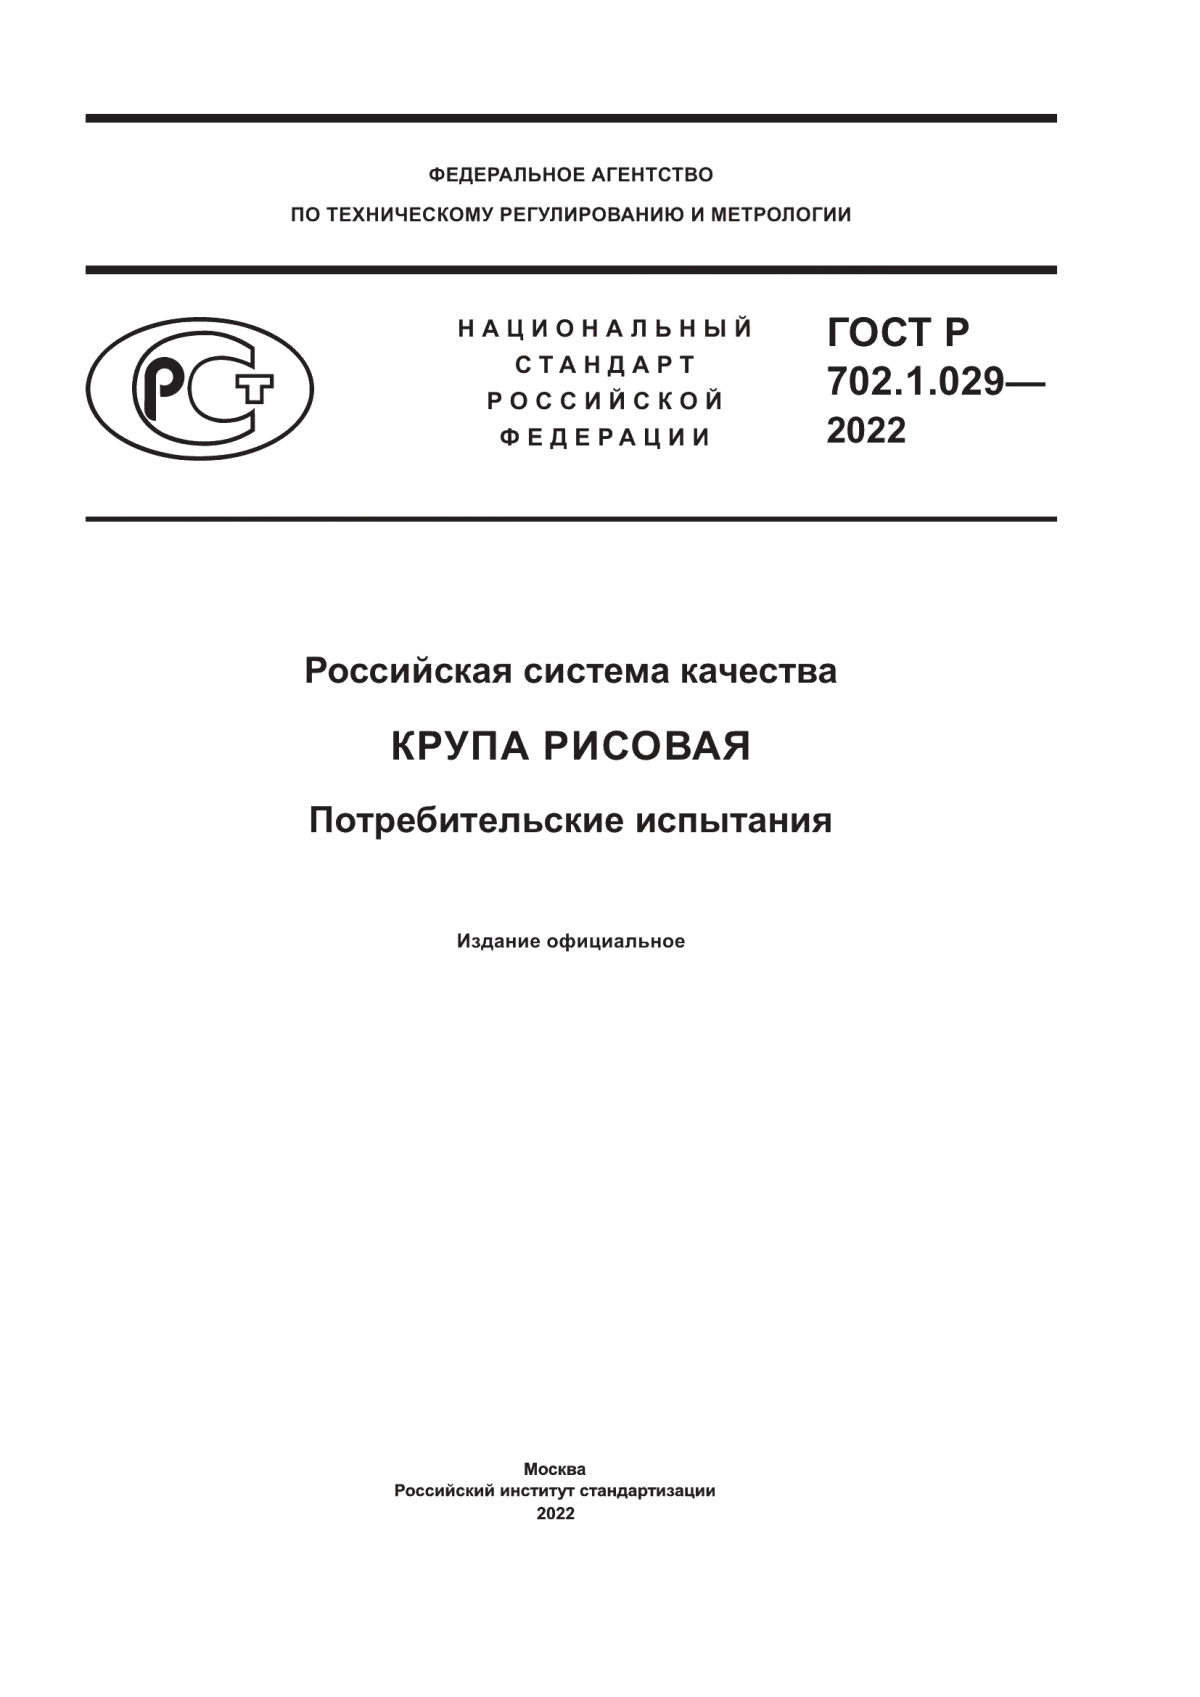 ГОСТ Р 702.1.029-2022 Российская система качества. Крупа рисовая. Потребительские испытания